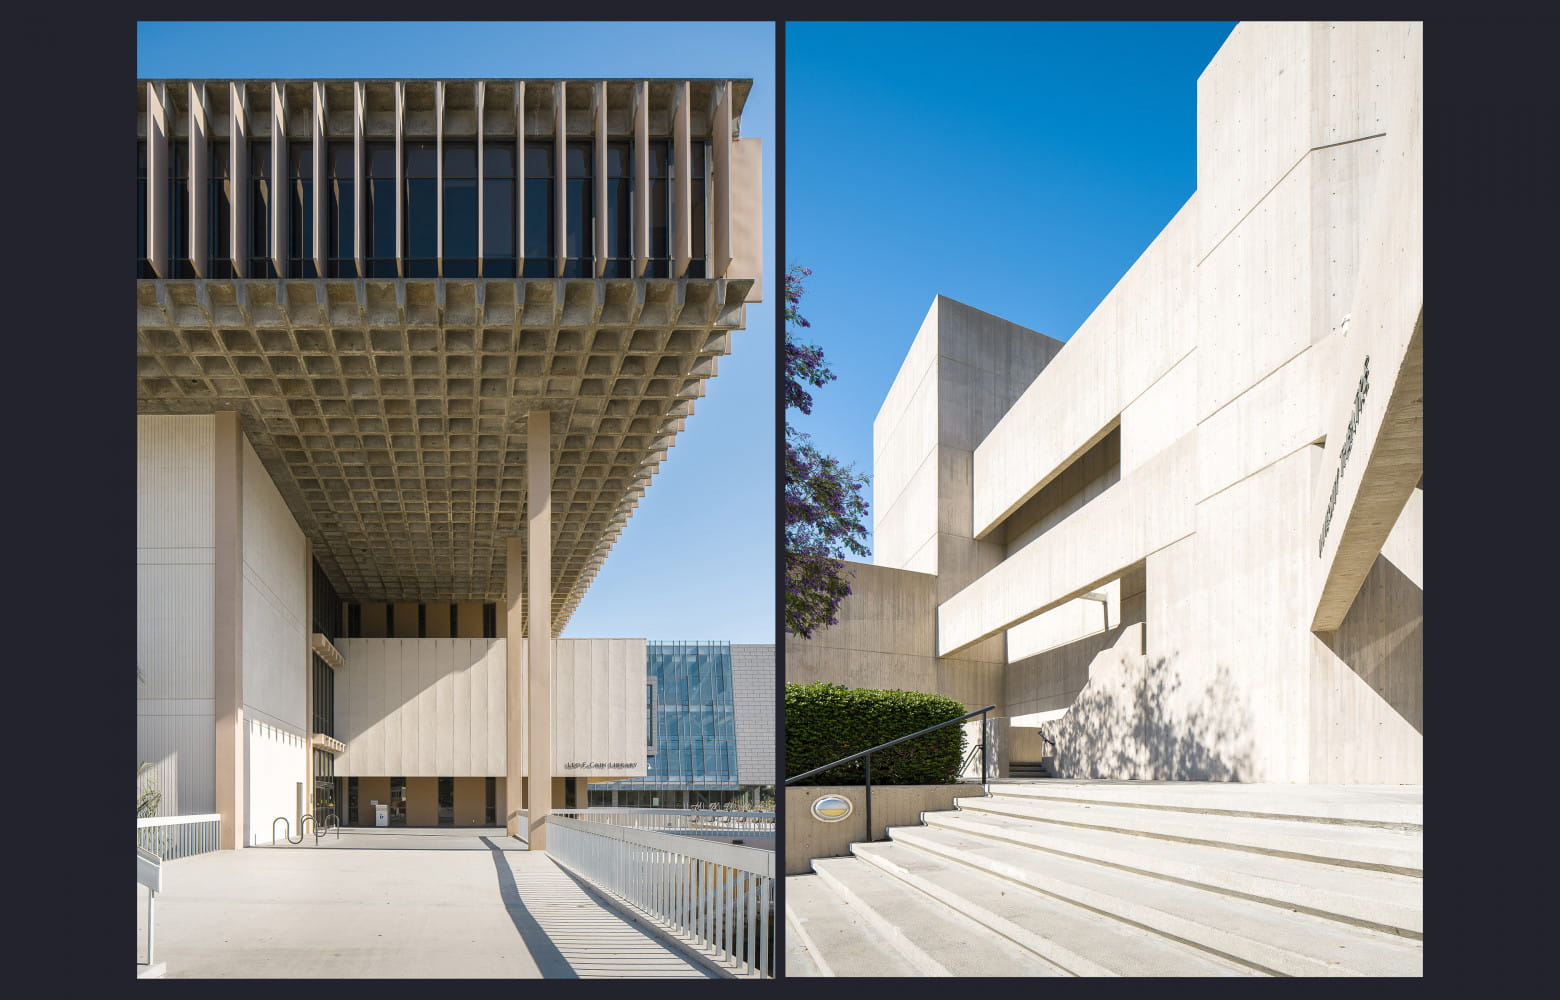 La bibliothèque et le théâtre de l’université CSUDH conçus respectivement par A. Quincy Jones et Dan Dworsky.